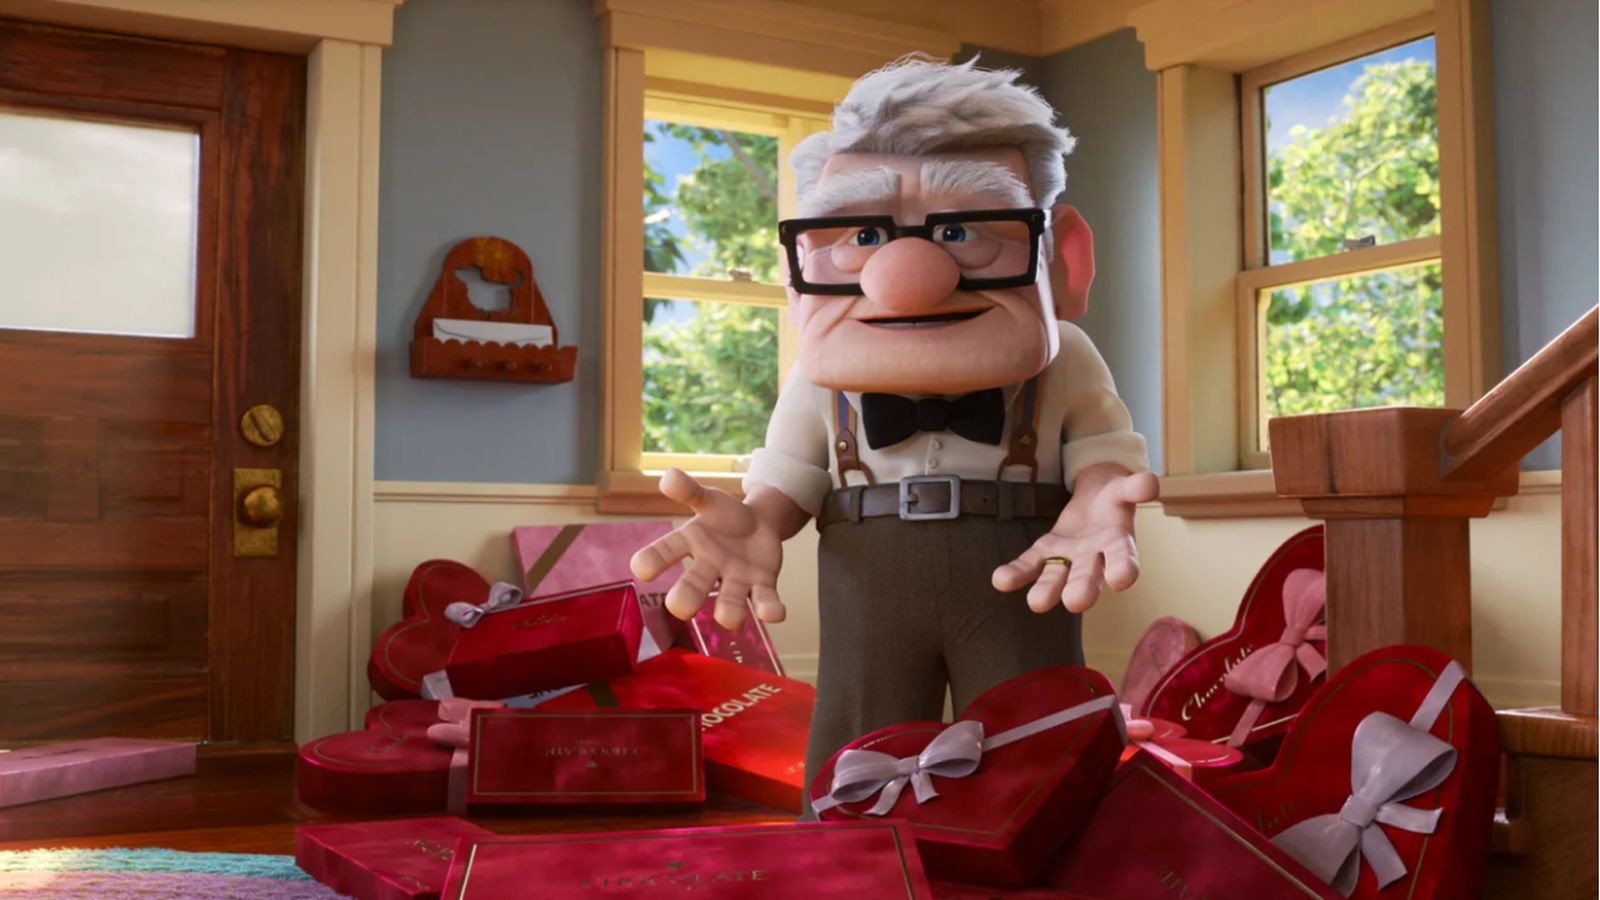 L'appuntamento di Carl: il vedovo di Up ha una seconda occasione per l'amore nel trailer del corto Pixar